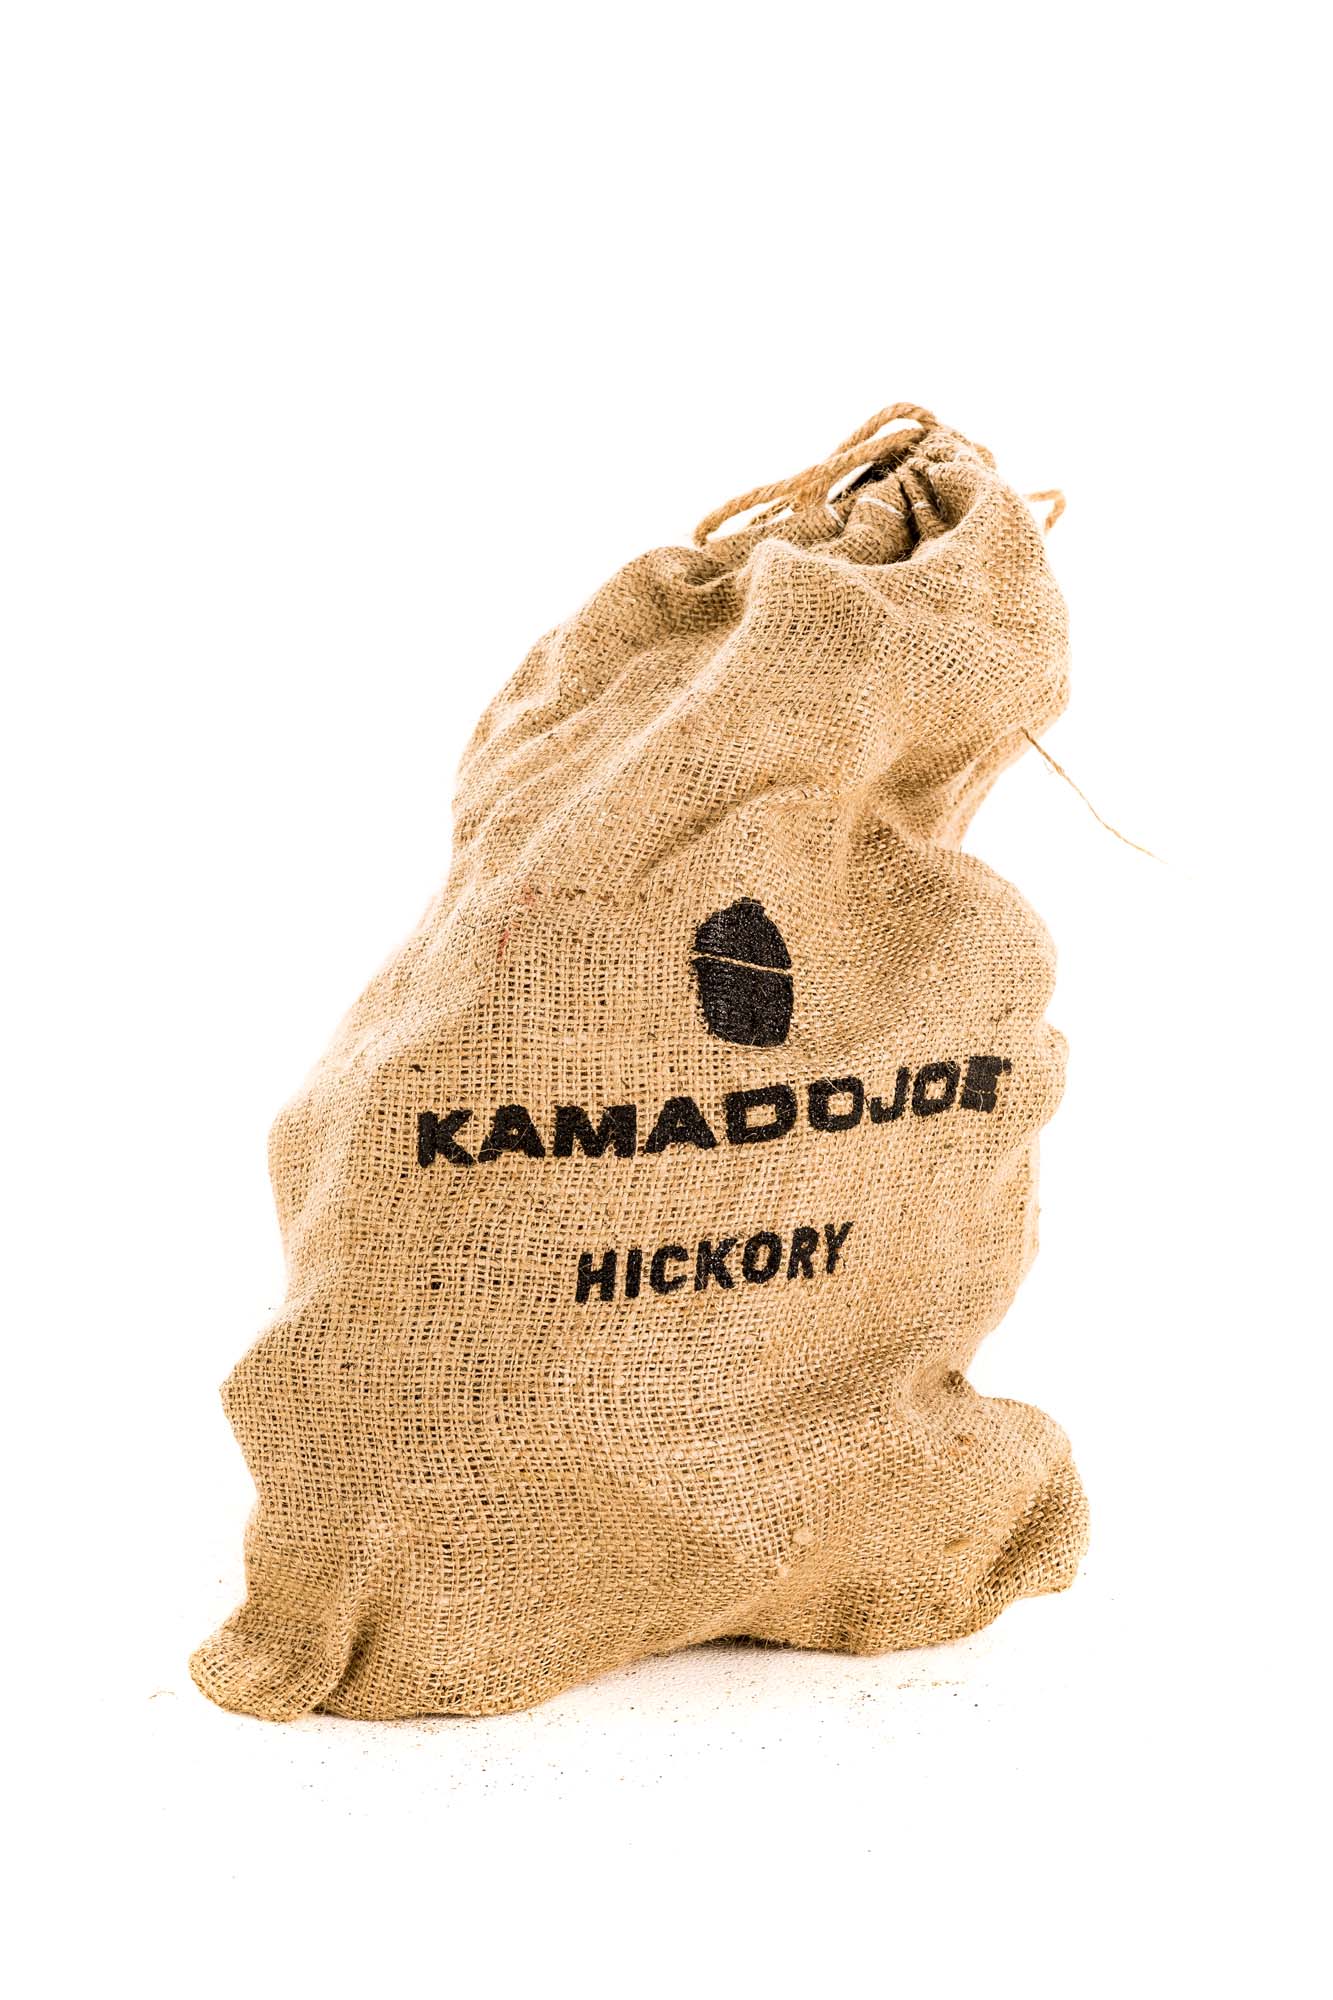 KAMADO JOE Hickory Chunks 4.5 Kg